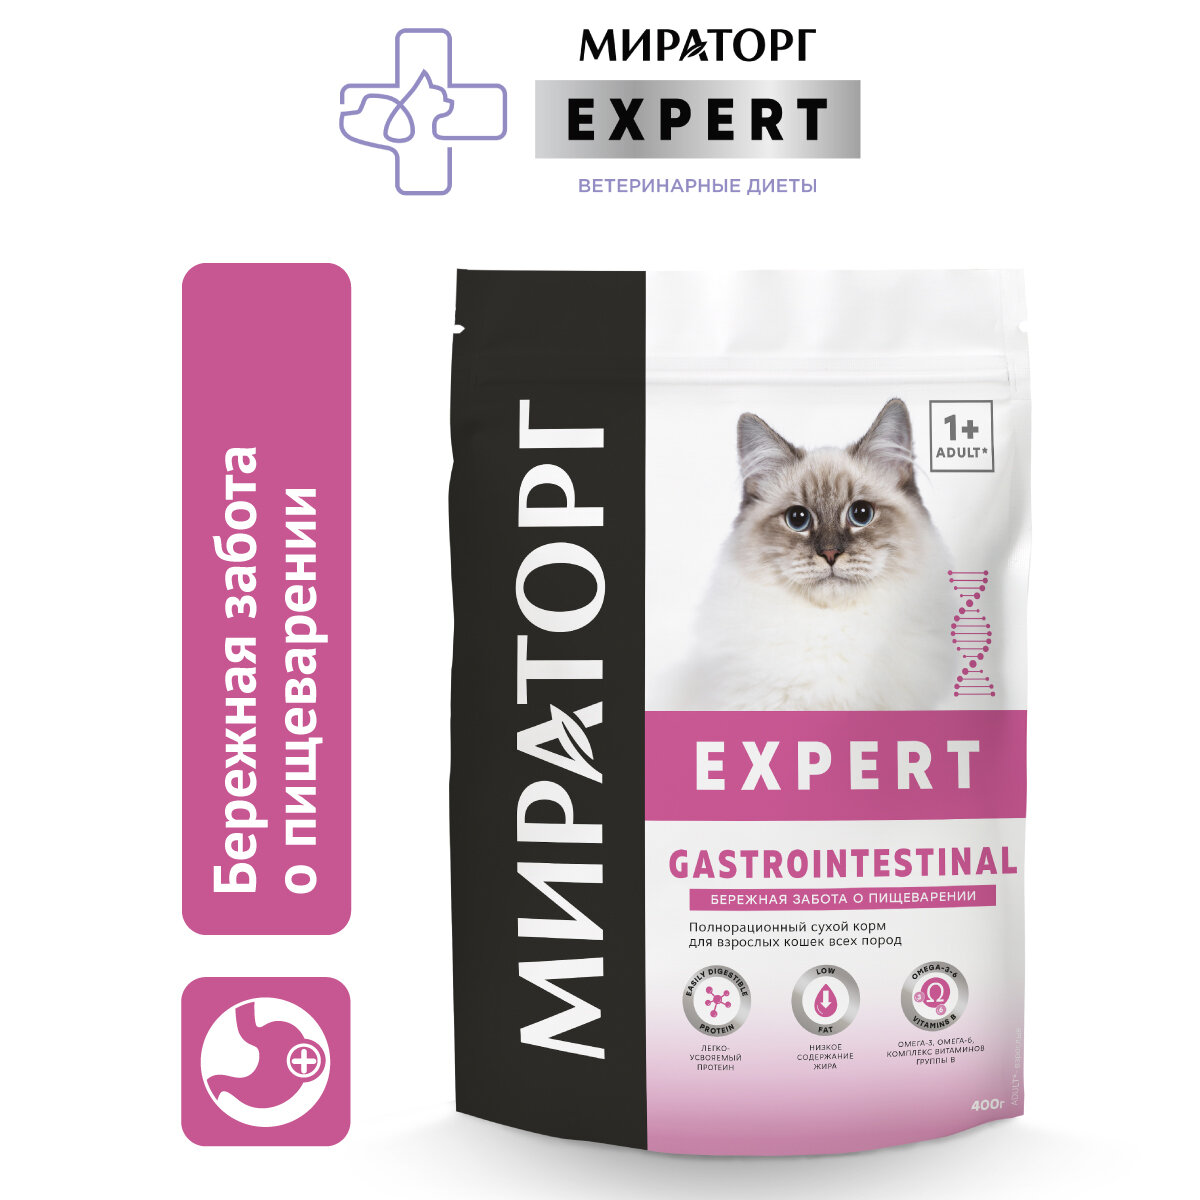 Мираторг Expert Gastrointestinal корм для кошек, «Бережная забота о пищеварении, кура 400 гр.